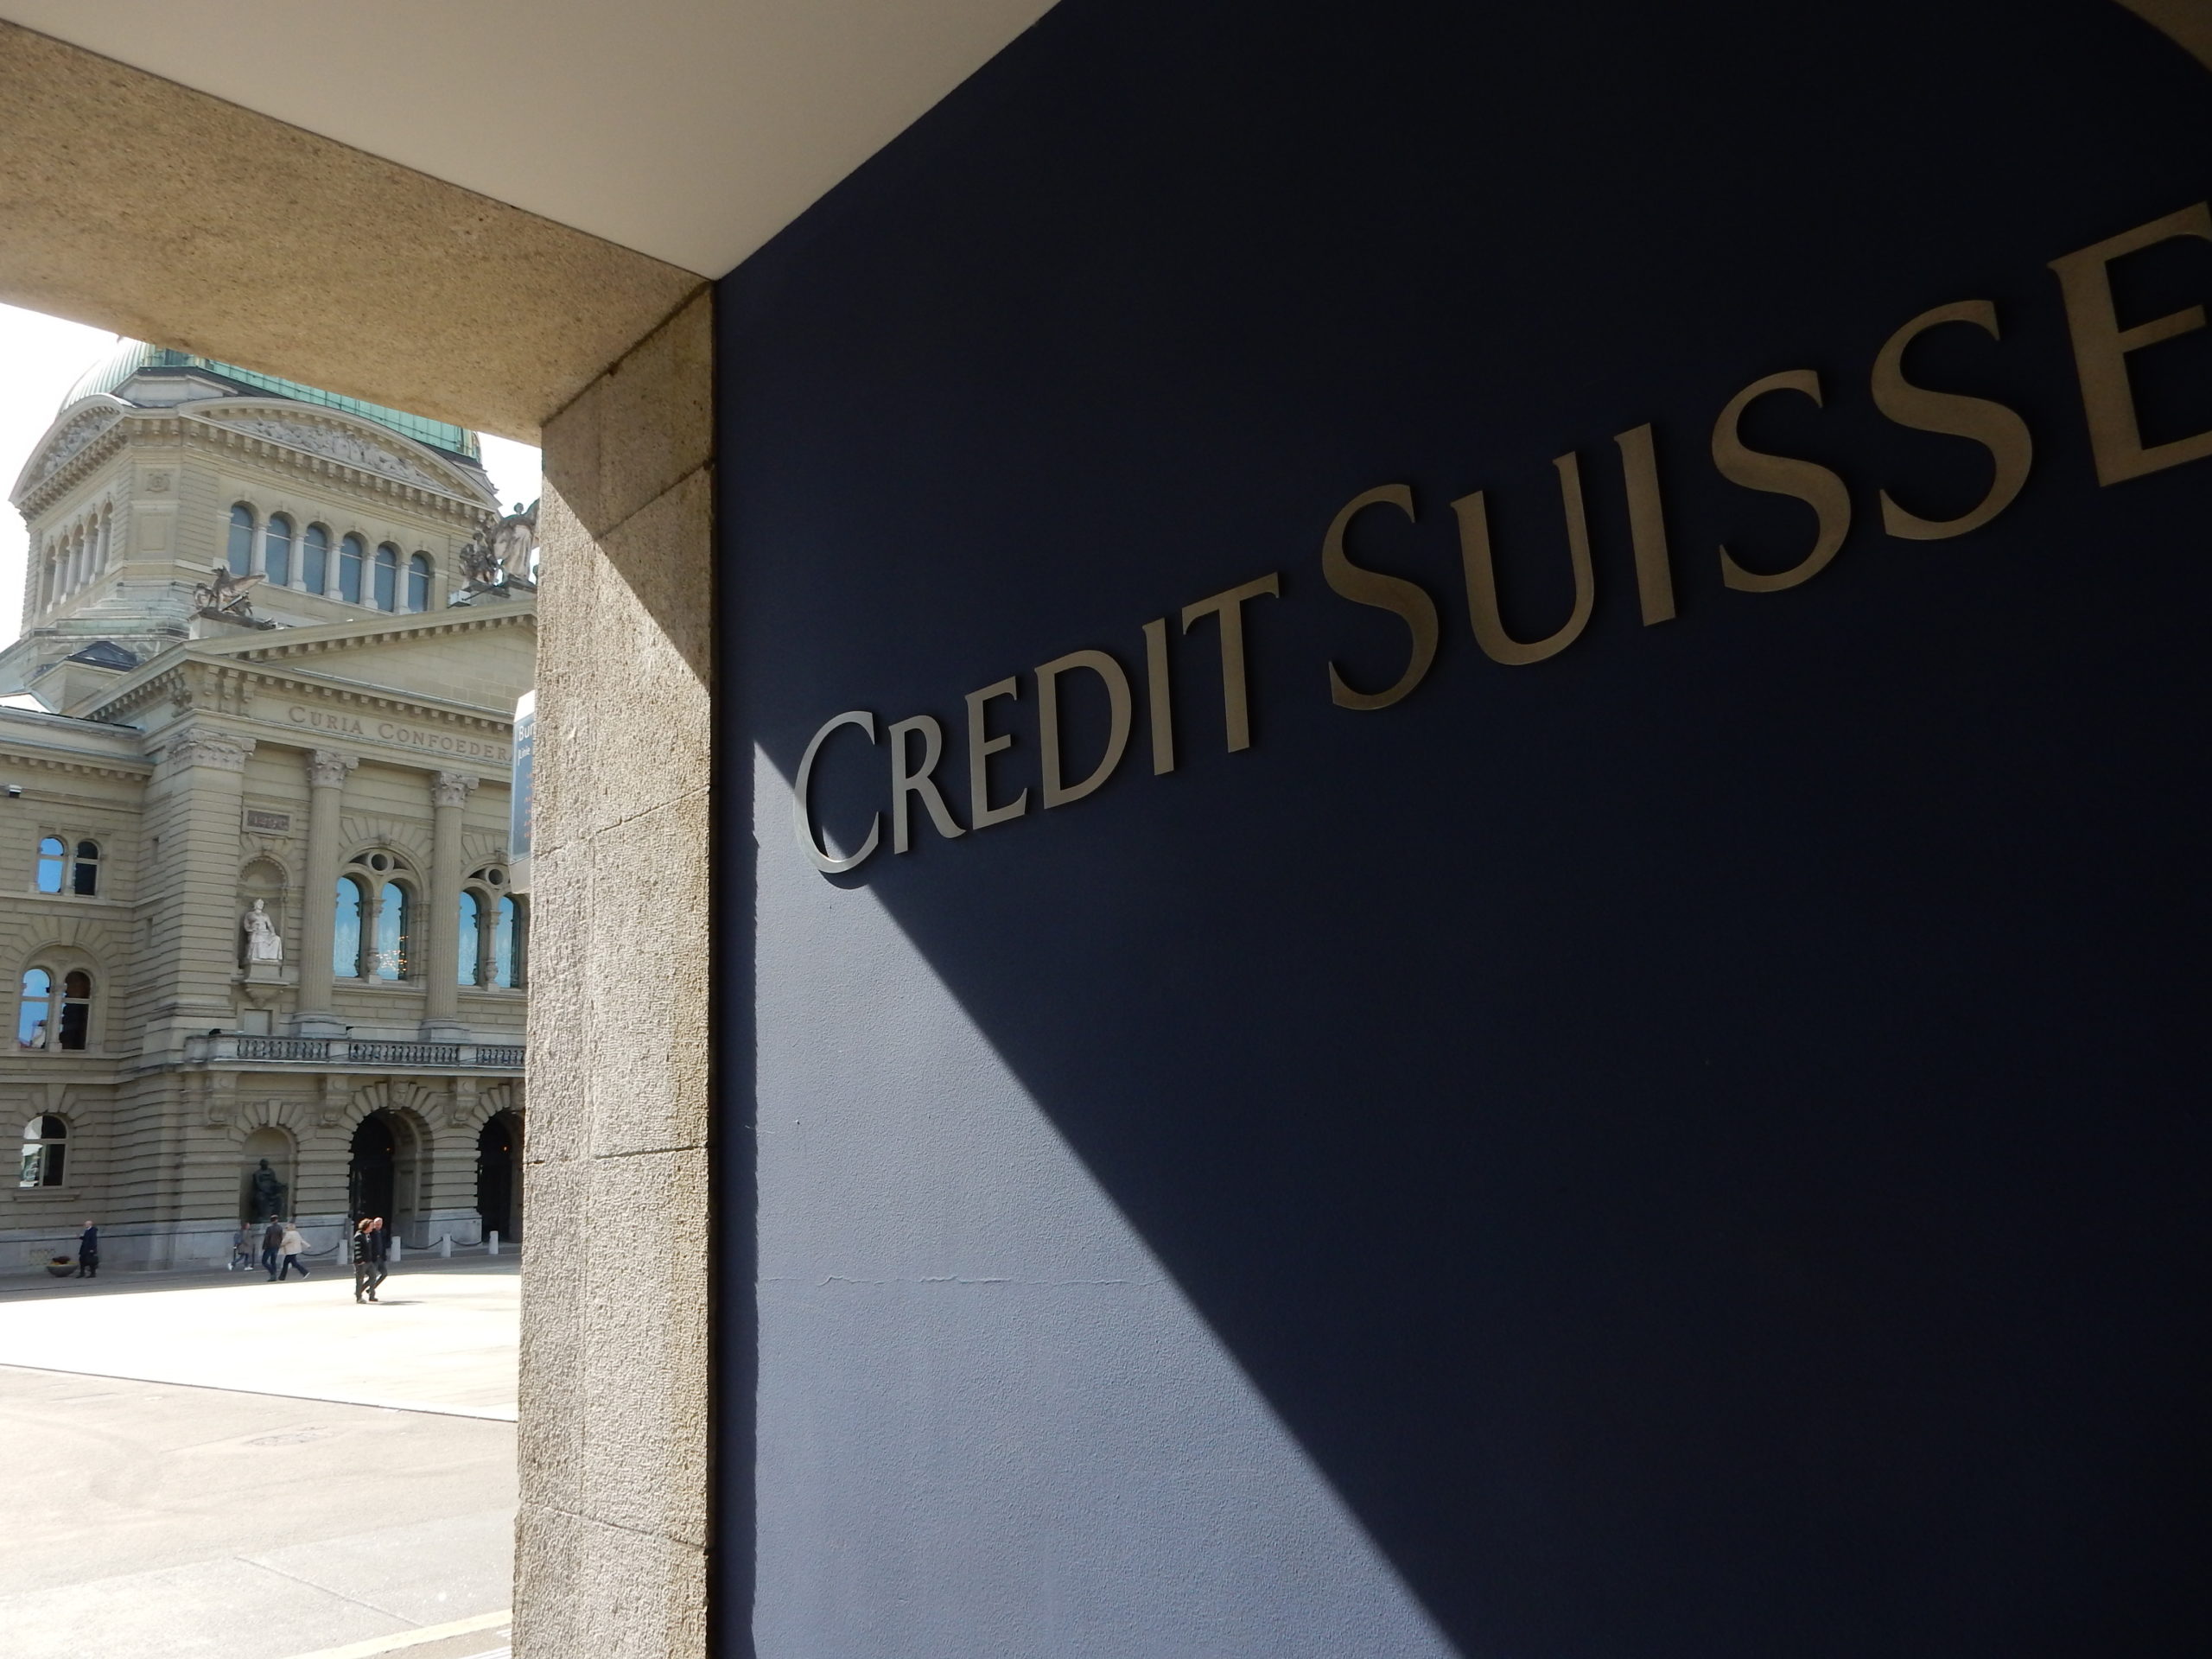 Crédit suisse